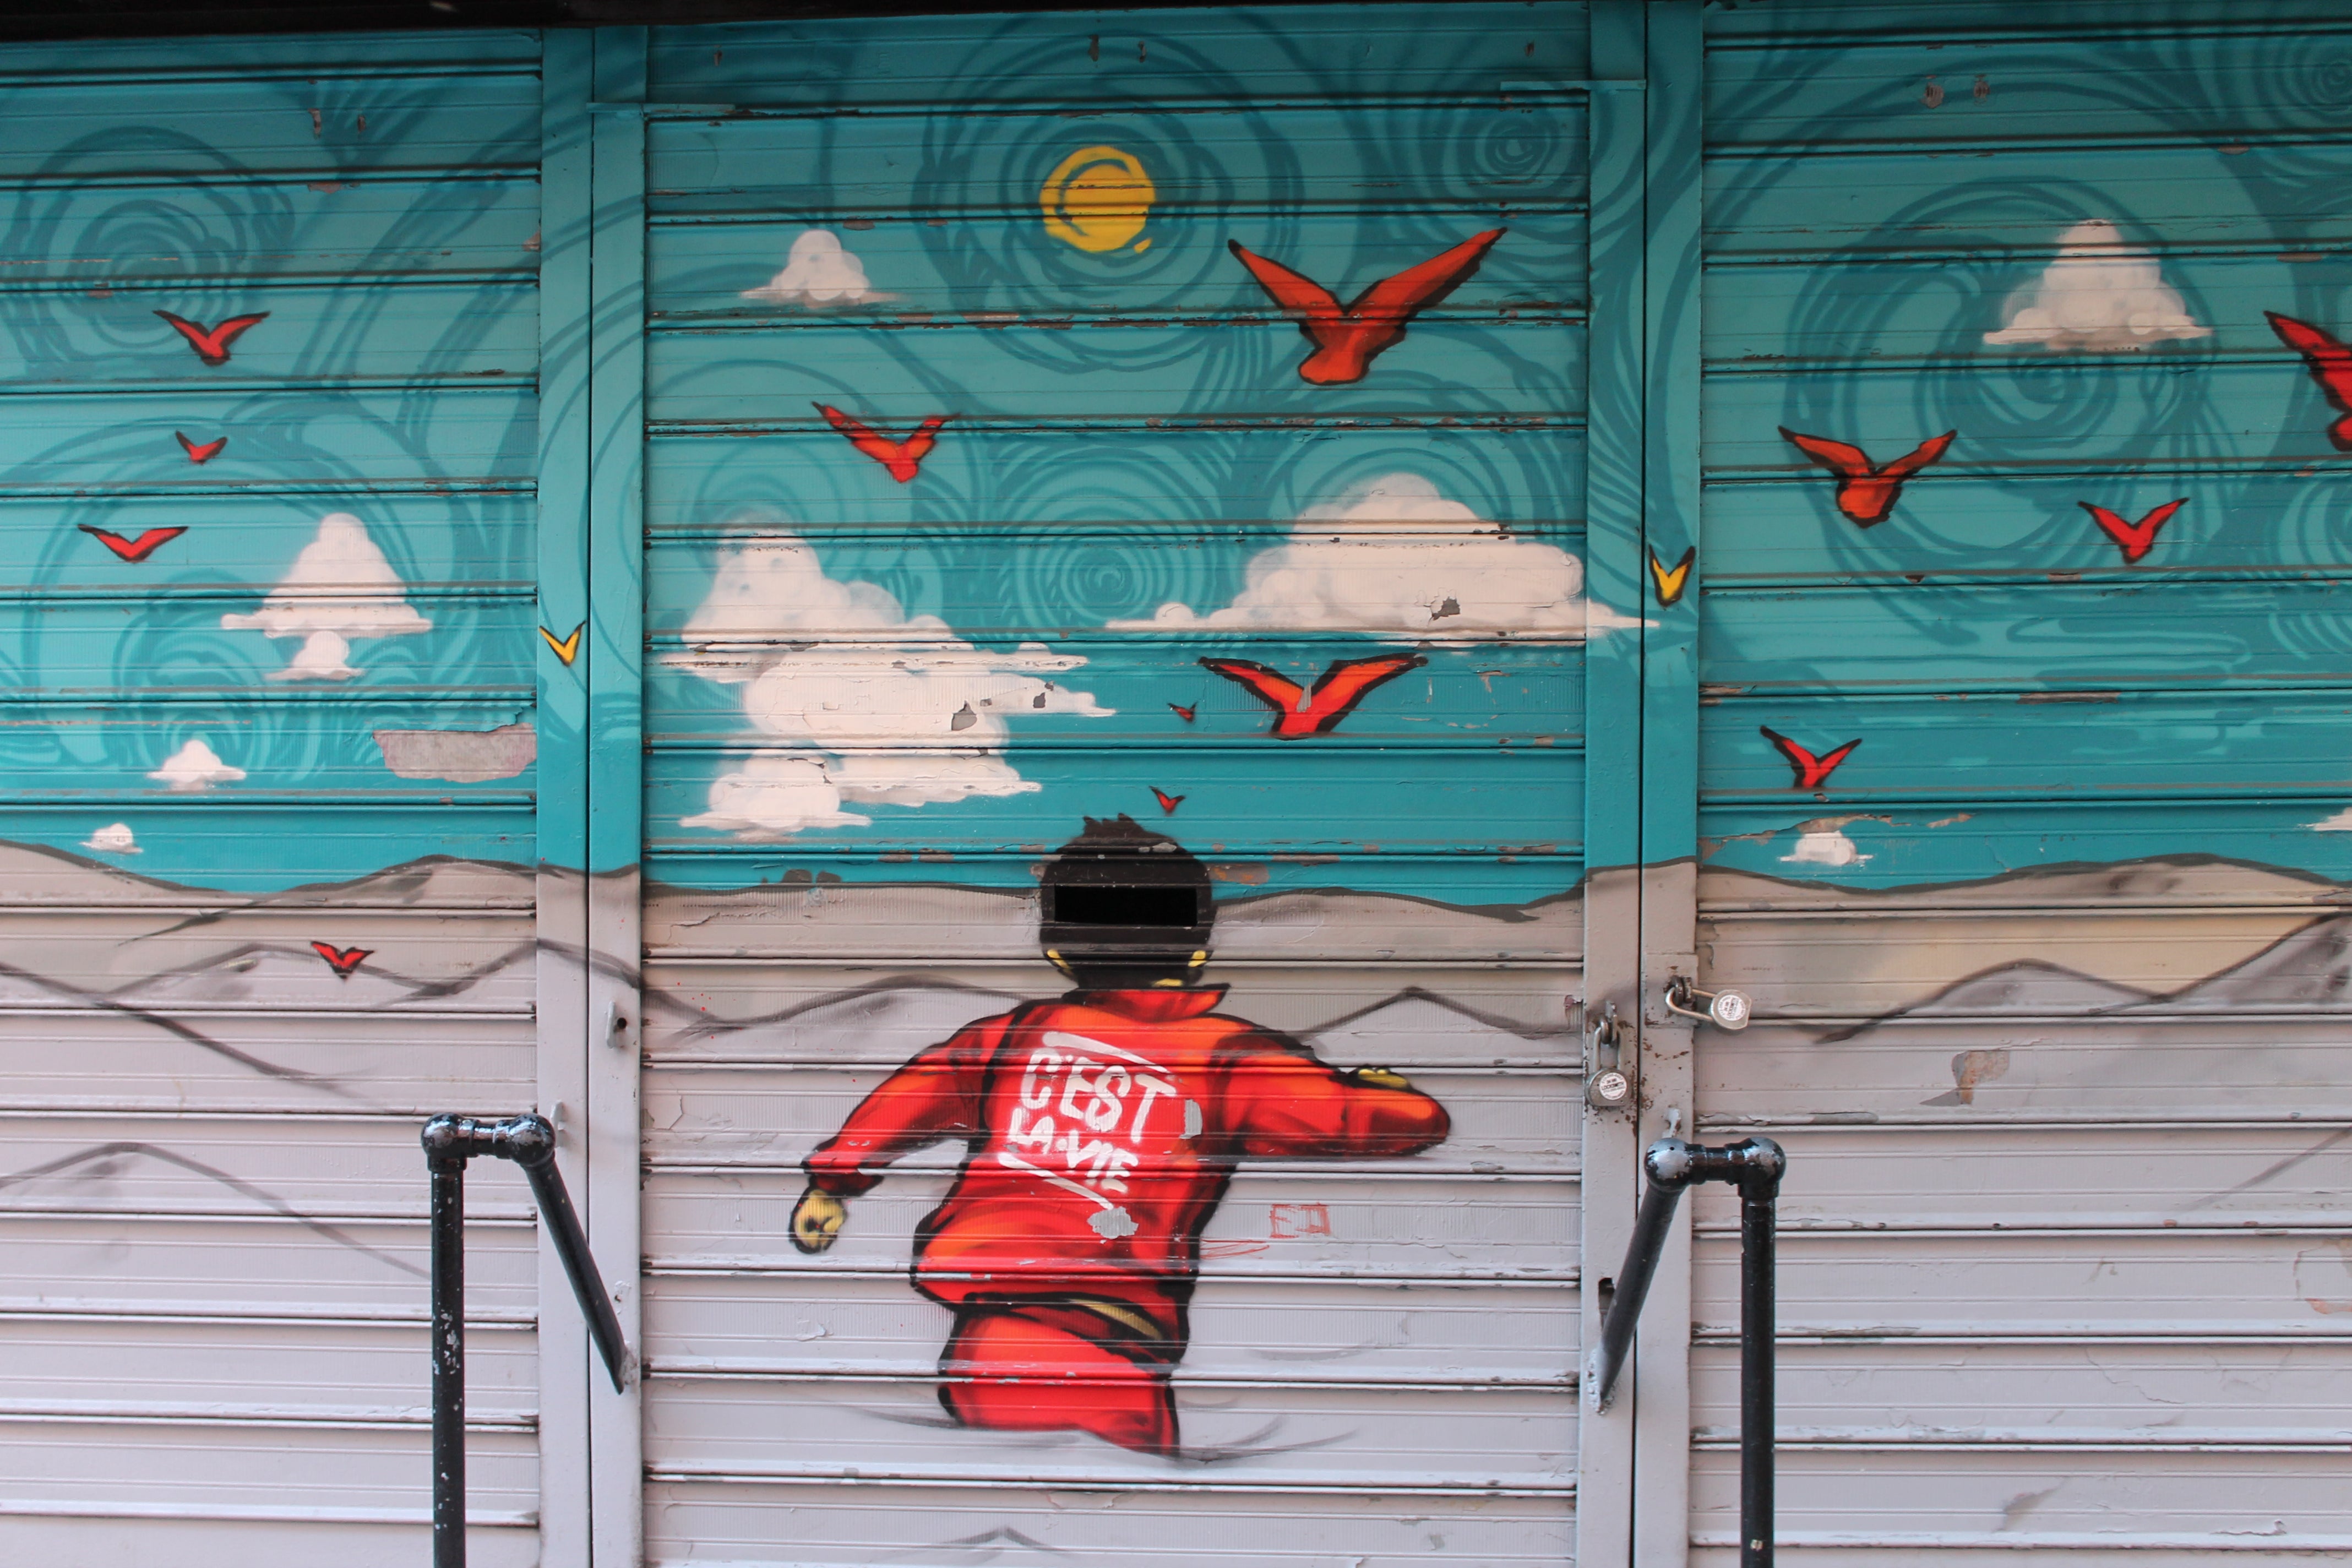 Street Art - C'est la vie